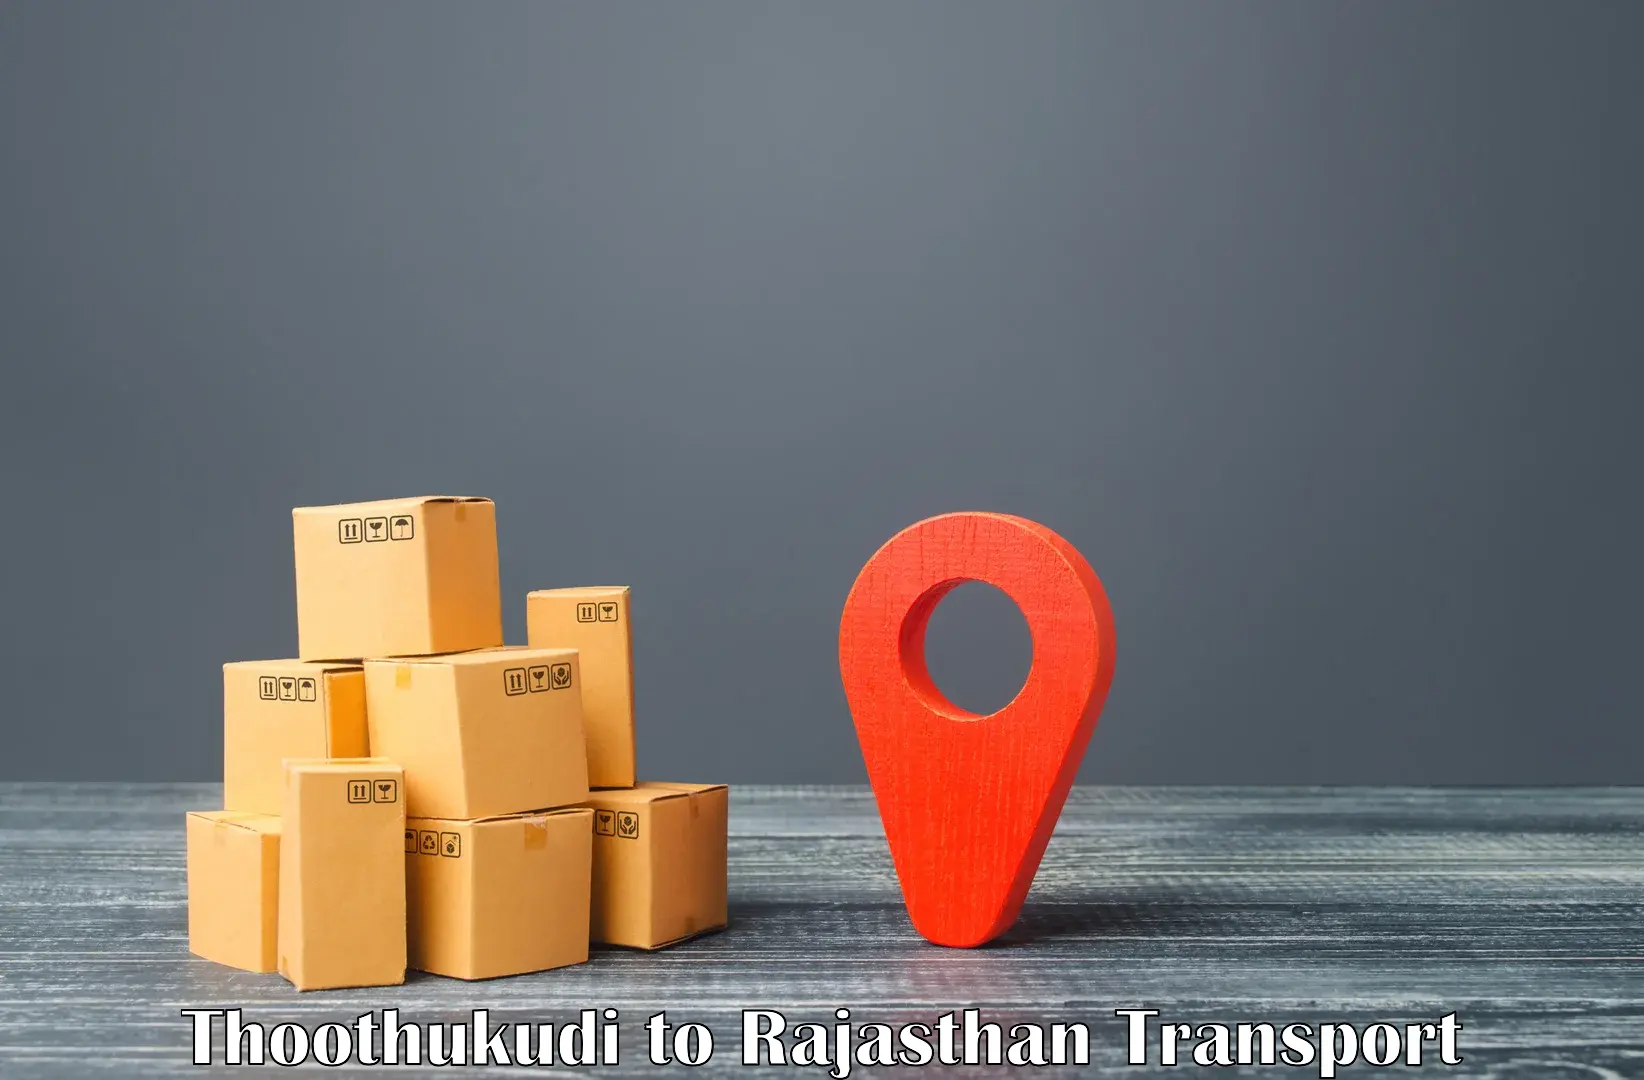 Truck transport companies in India Thoothukudi to Tarnau